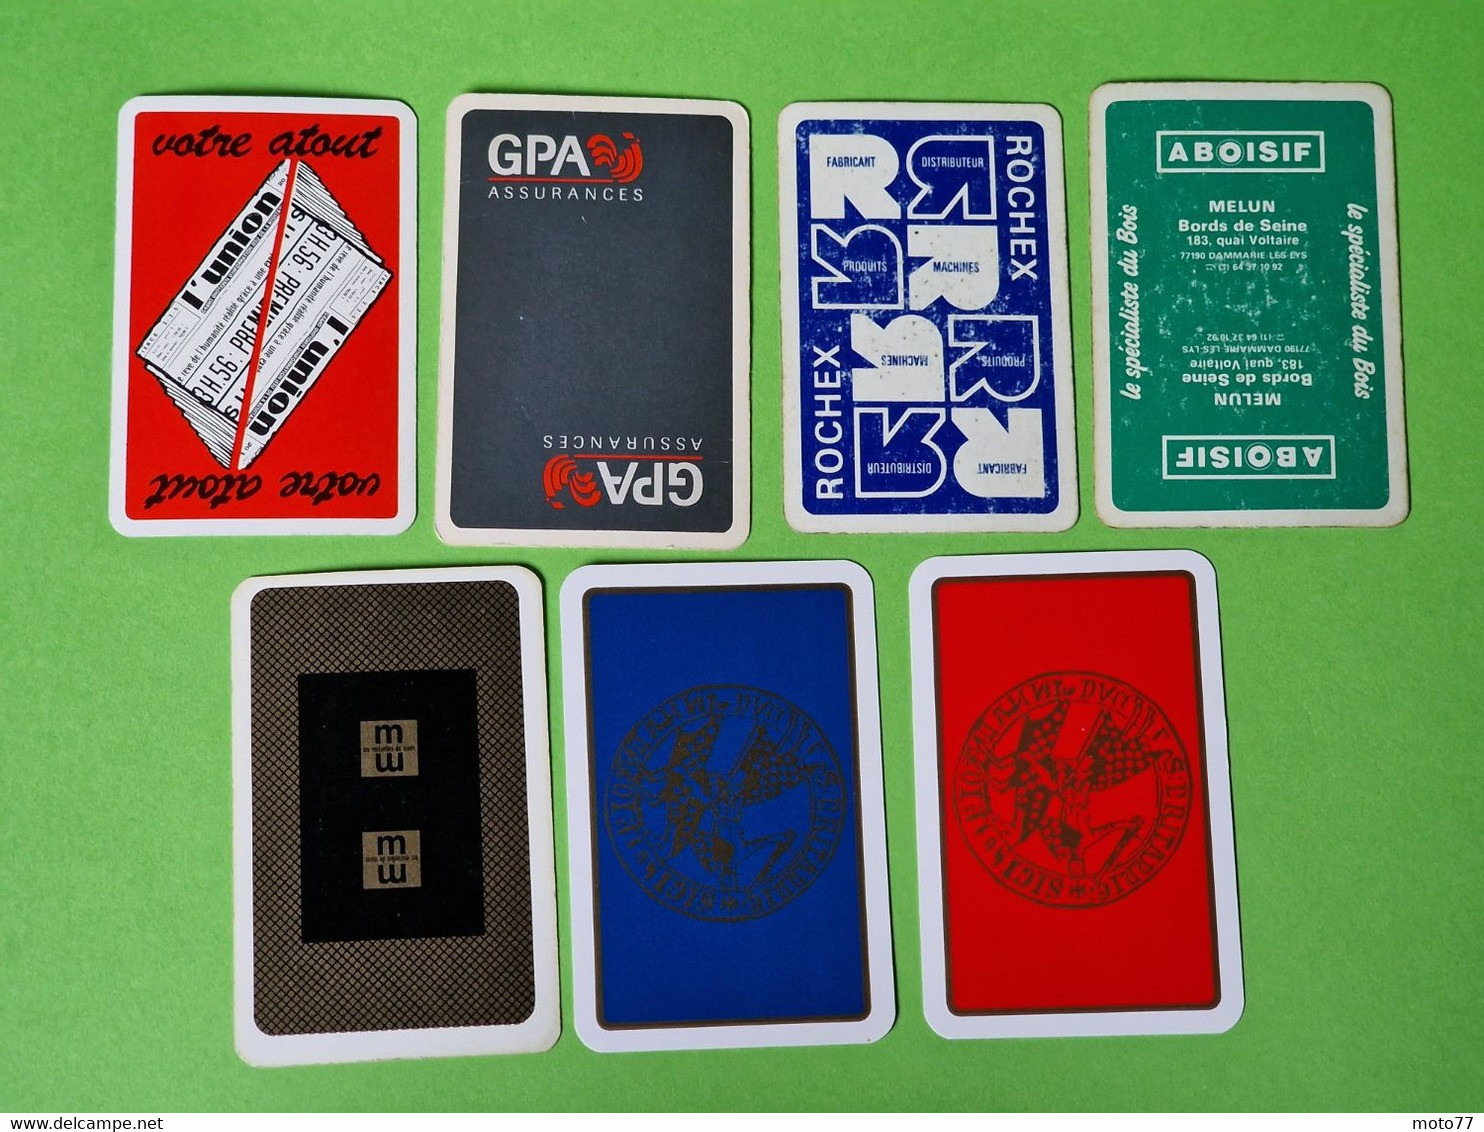 Lot 7 Cartes à Jouer - ROI De CŒUR - Dos Bleu,Rouge - Pub L'UNION Reims, ABOISIF, GPA, M&M, ROCHEX - Vers 1990/2000 - 32 Cartes